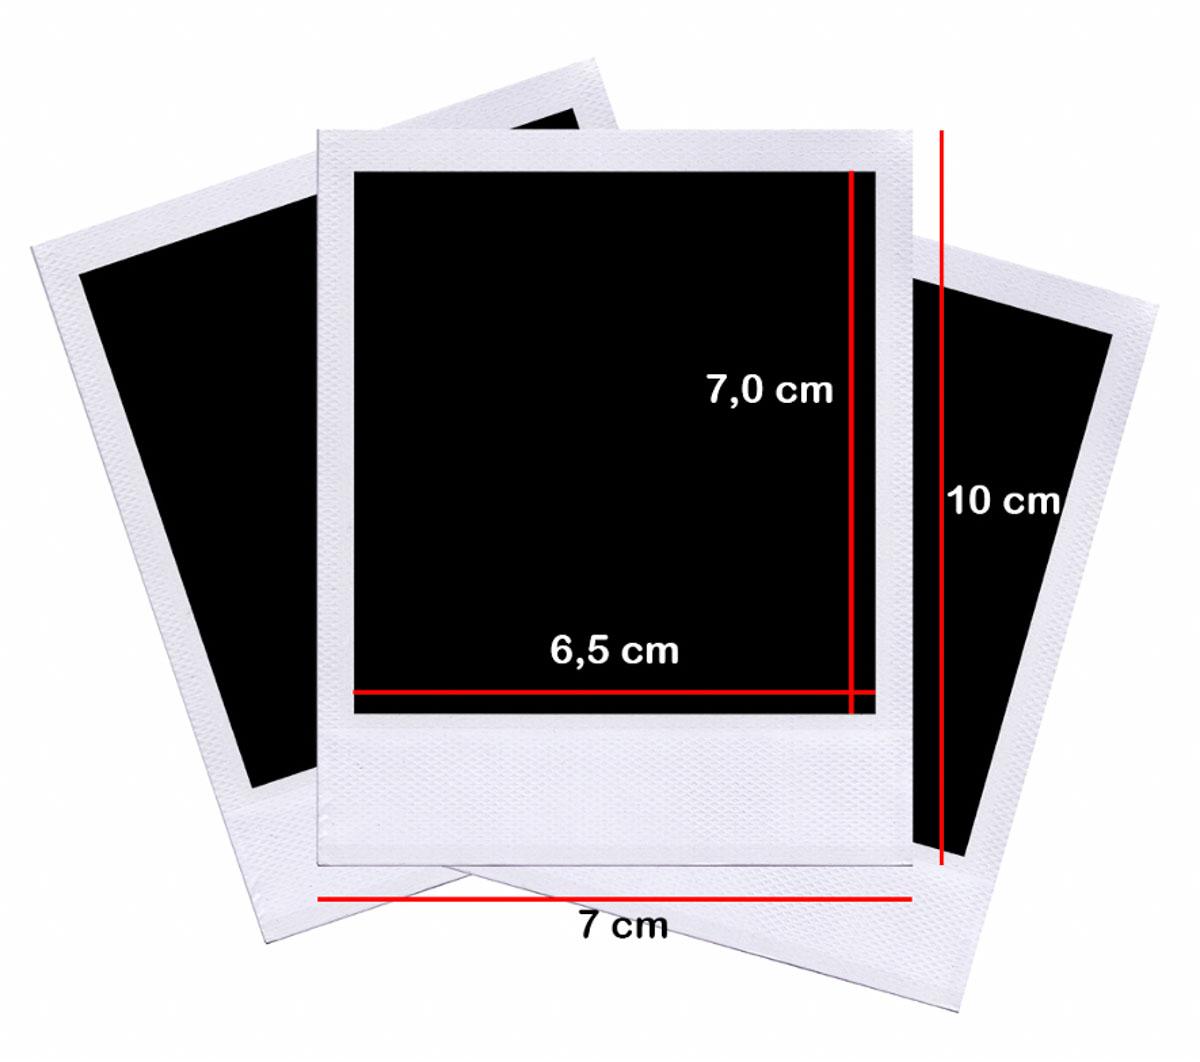 Fotos em Formato Polaroid - Packs desde 4,68€ Imnprima Fotos